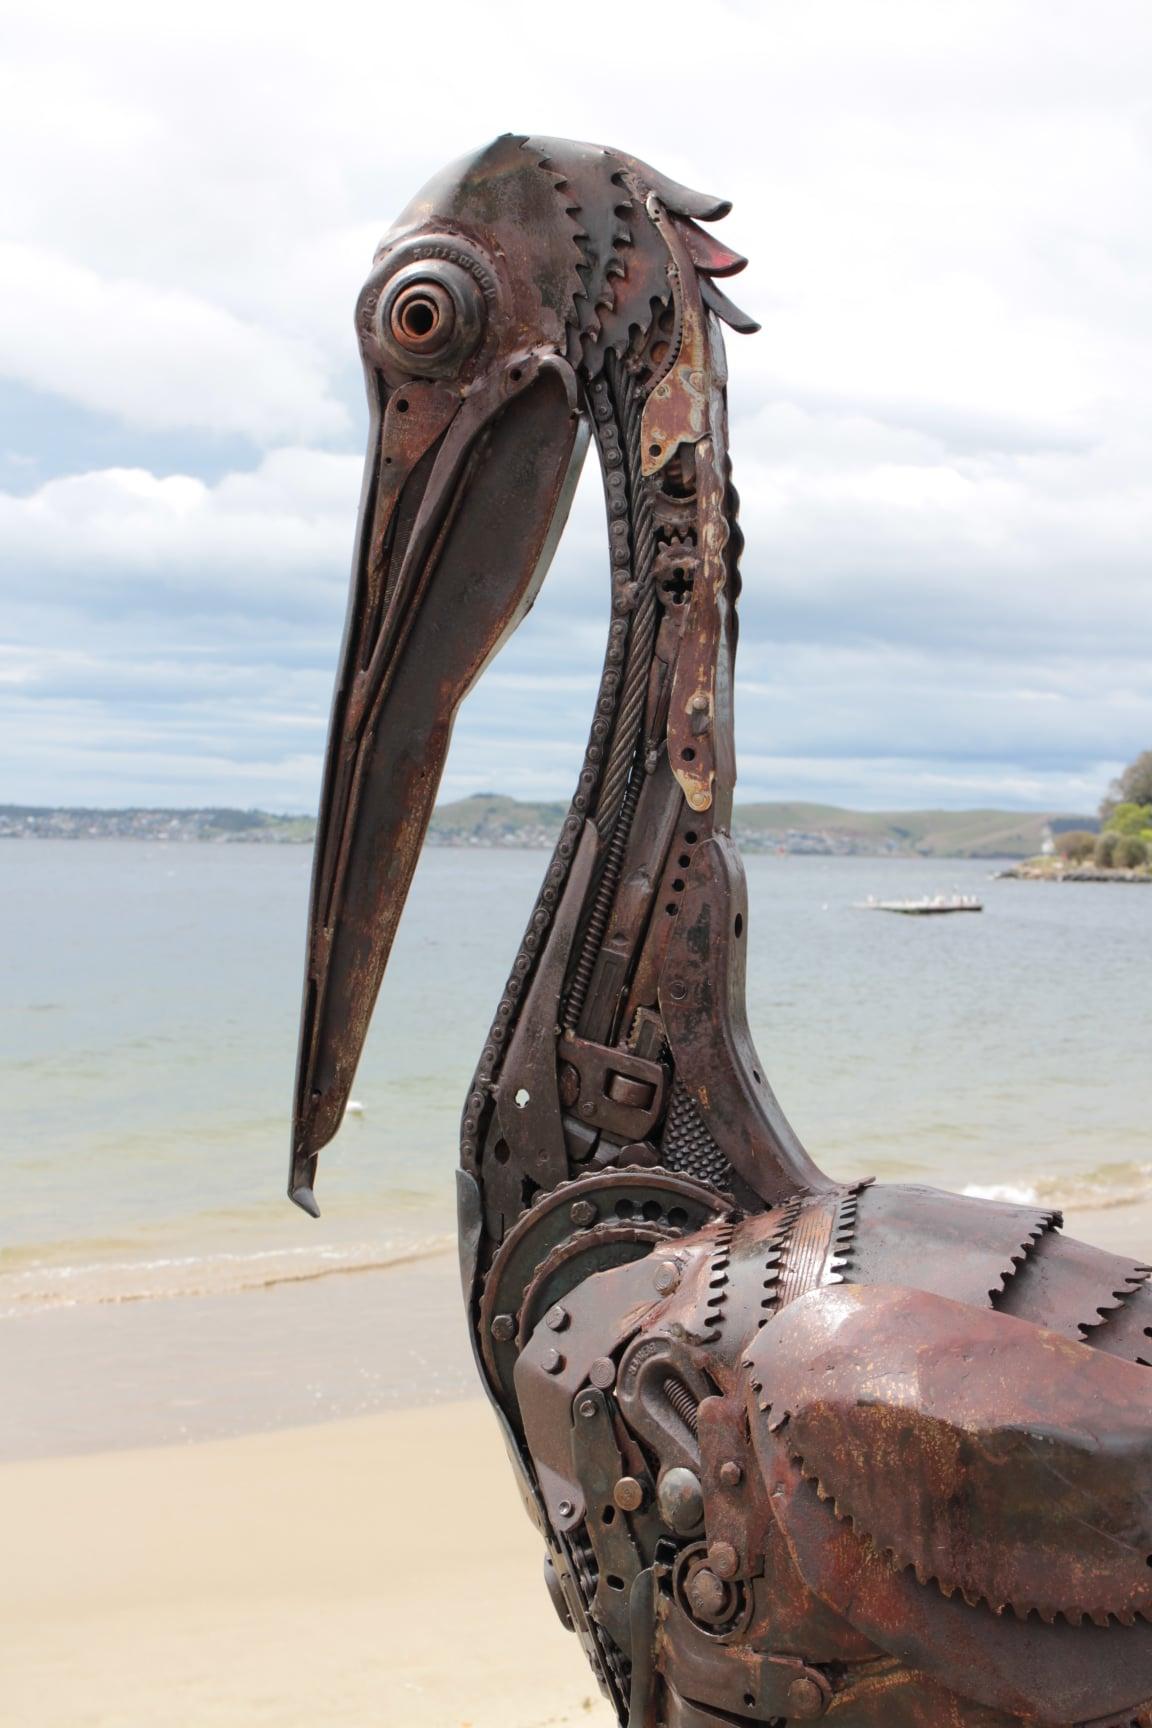 An Australian pelican sculpture. (Courtesy of <a href="https://www.instagram.com/sloanesculpture/">Matt Sloane</a>)